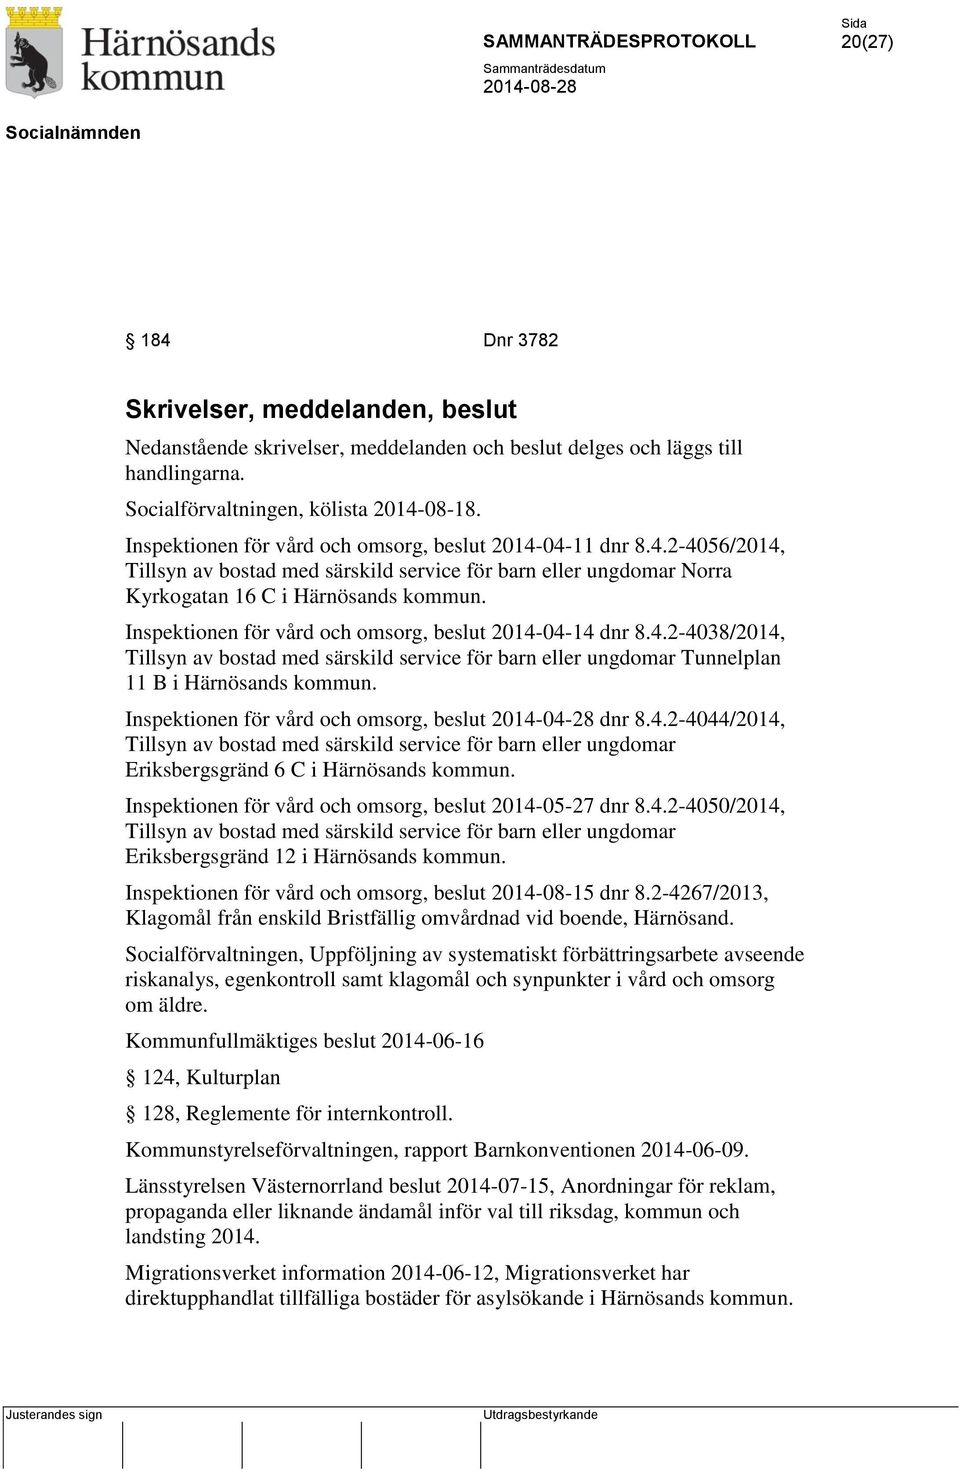 Inspektionen för vård och omsorg, beslut 2014-04-14 dnr 8.4.2-4038/2014, Tillsyn av bostad med särskild service för barn eller ungdomar Tunnelplan 11 B i Härnösands kommun.